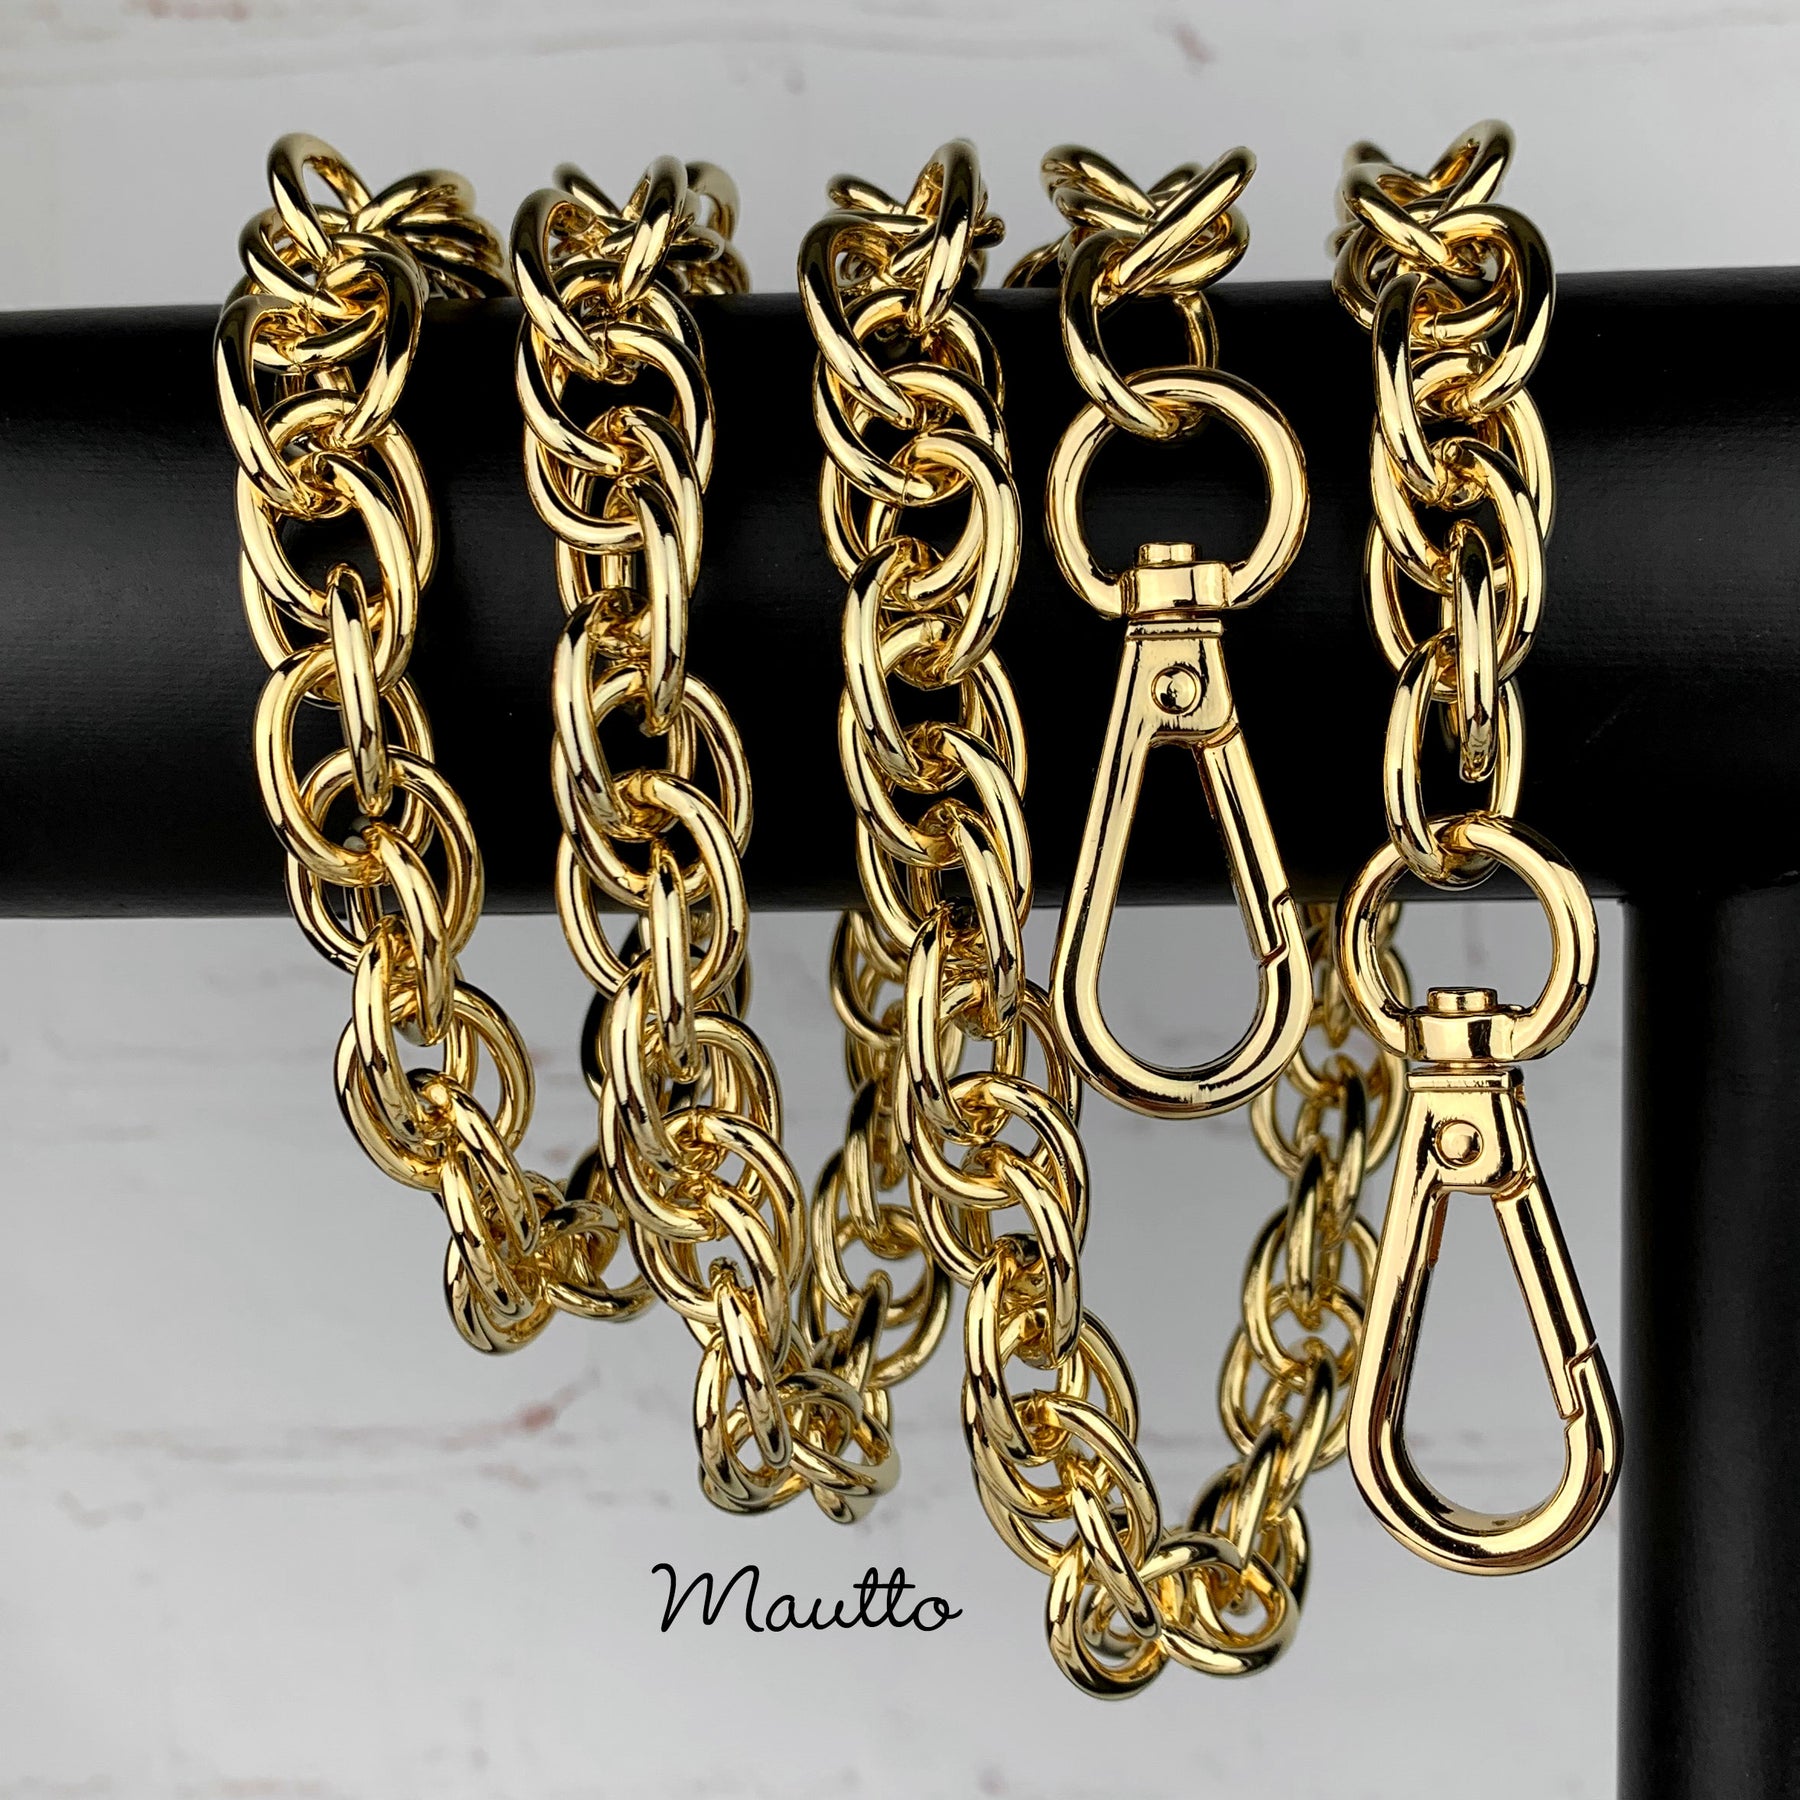 13mm Antique Gold Aluminum Purse Chain Strap, Bag Handle Chain, Crossbody  Bag Strap, Chain Strap With Clasps, Shoulder Handbag Strap Chain 